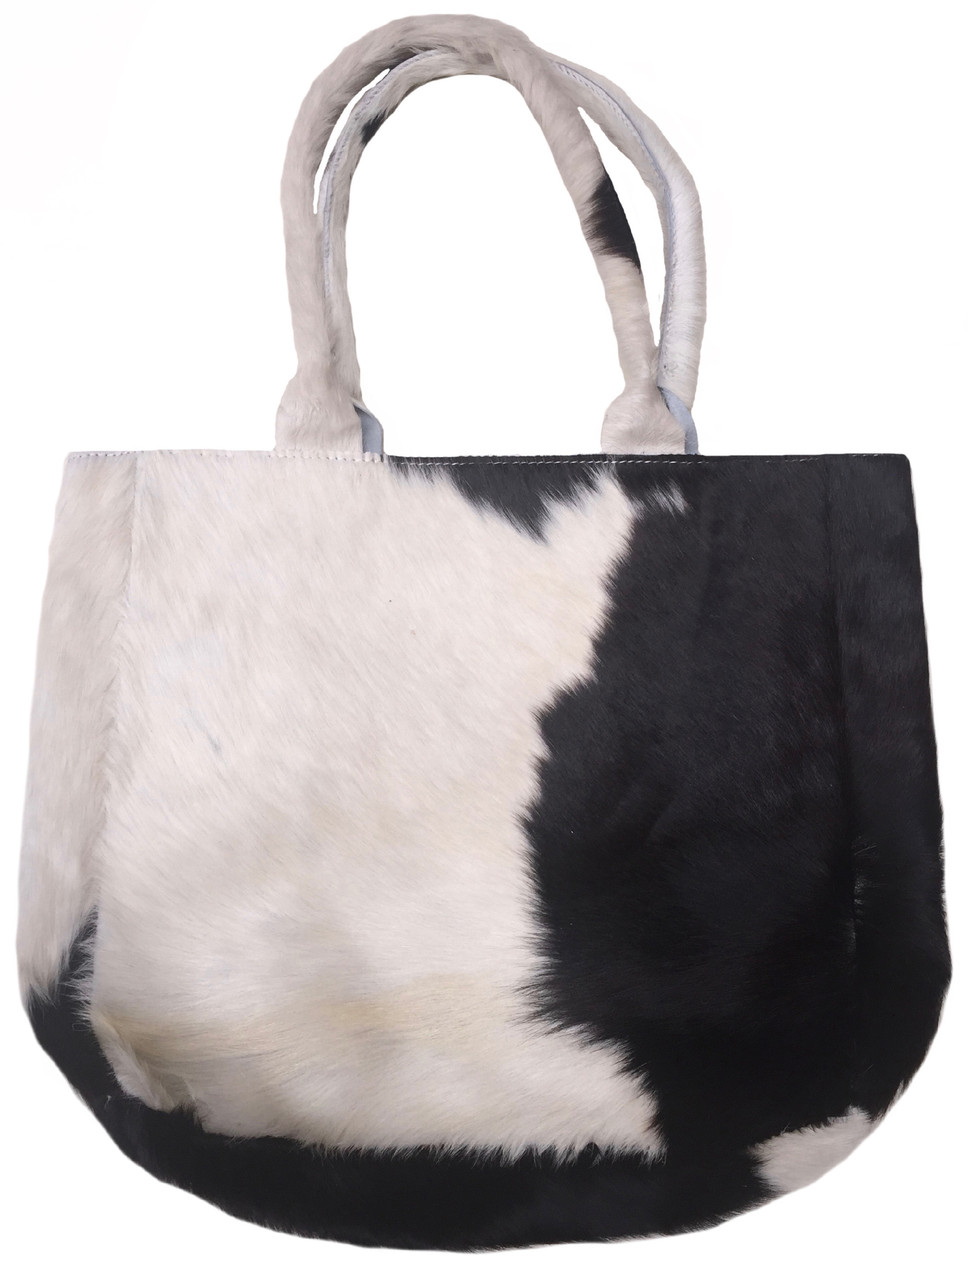 Luxurious Bag Heidi In Black White Cowhide